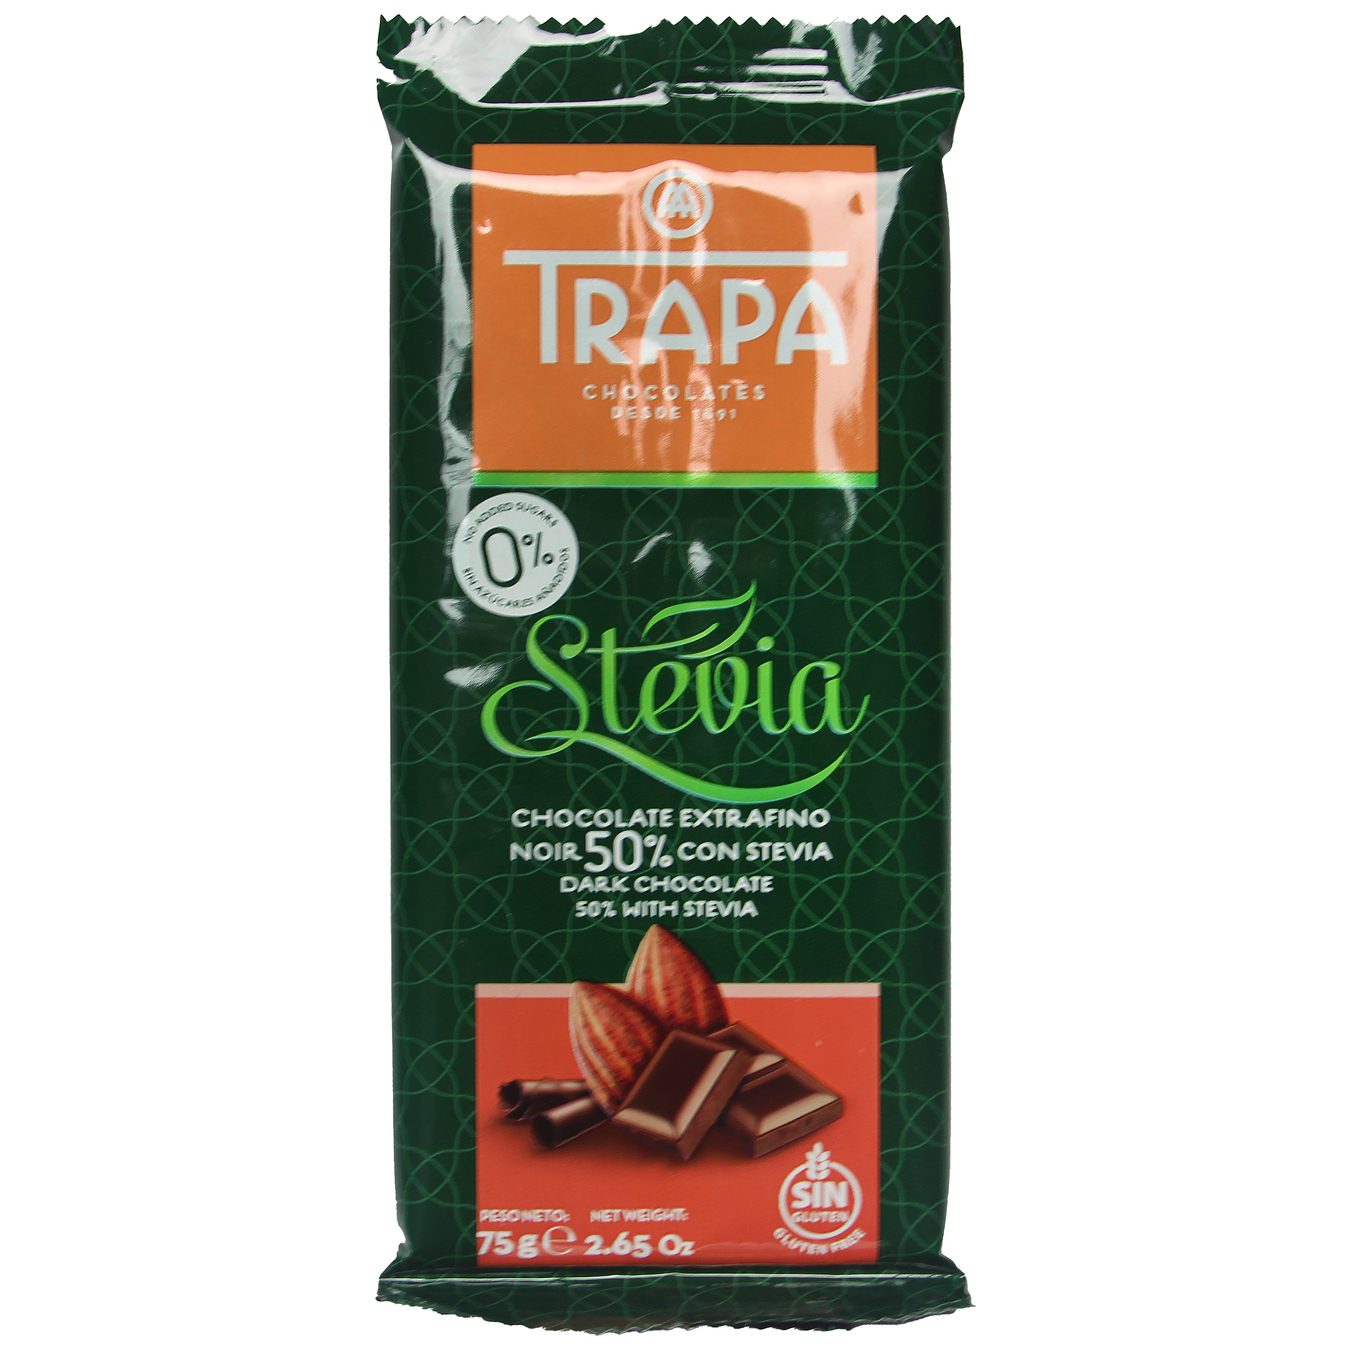 Шоколад черный Trapa Stevia без сахара 75г